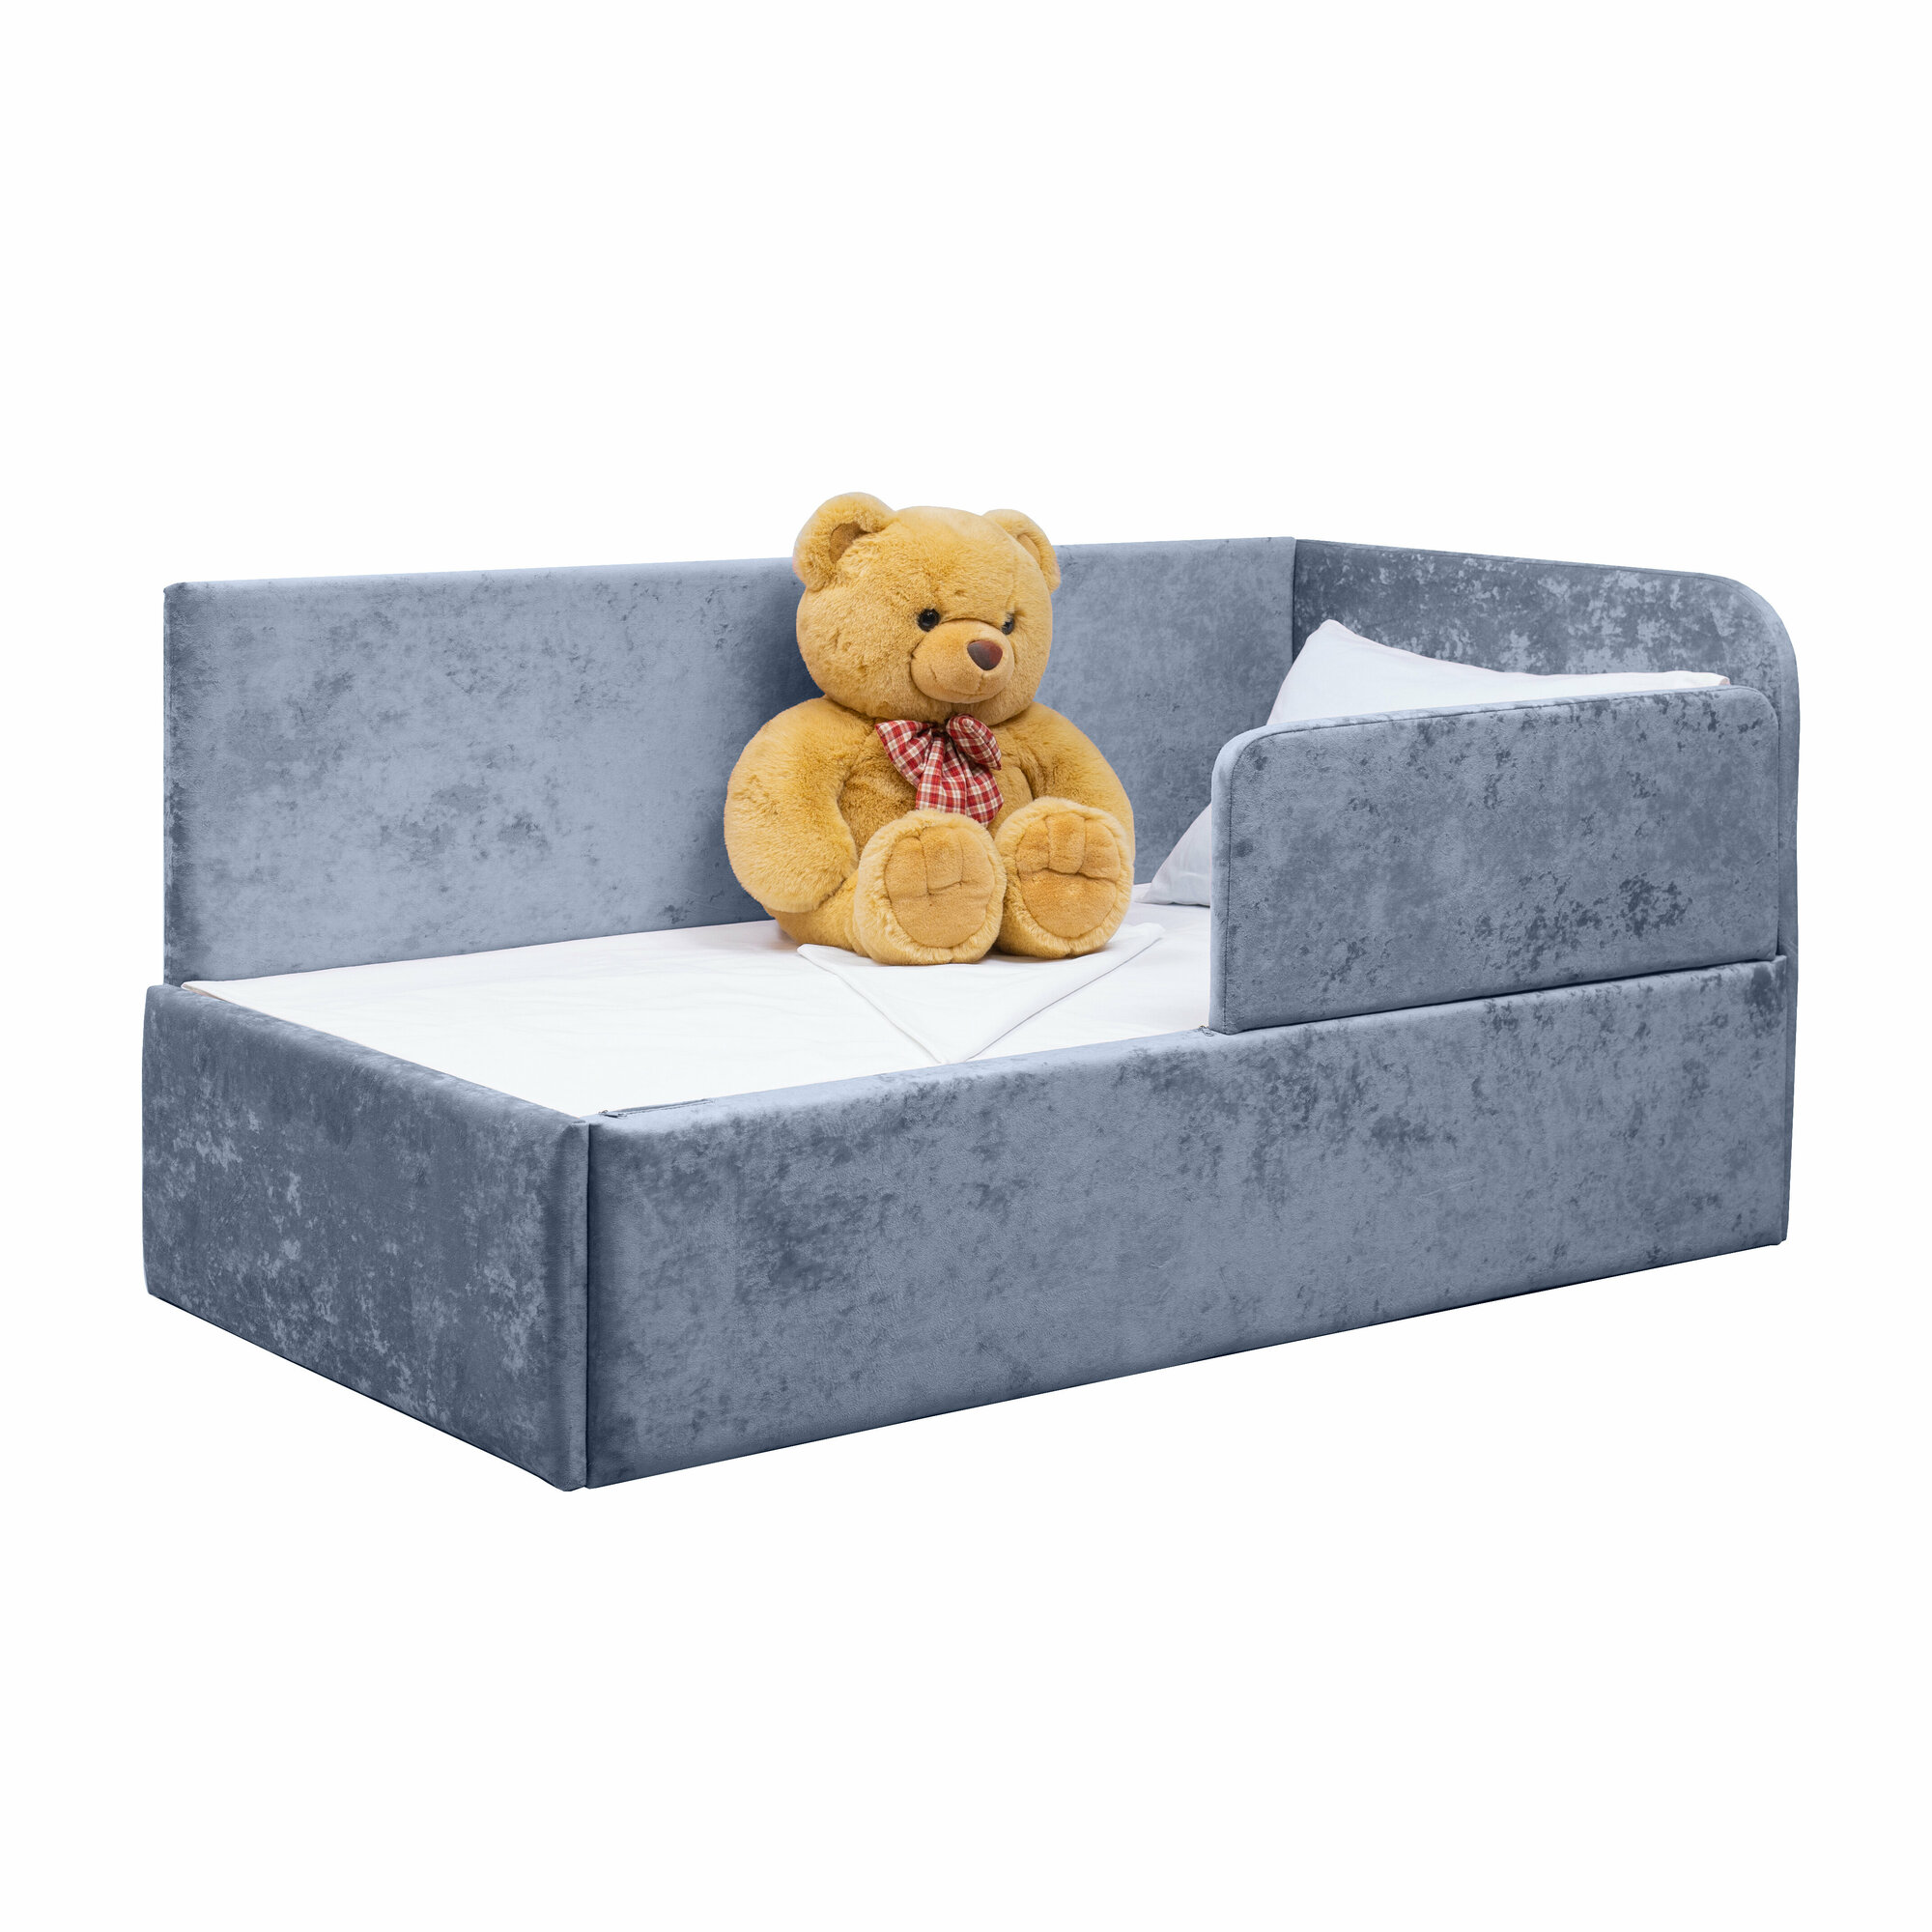 Кровать-диван Непоседа 200*90 голубая , с защитным бортиком, правый угол сборки